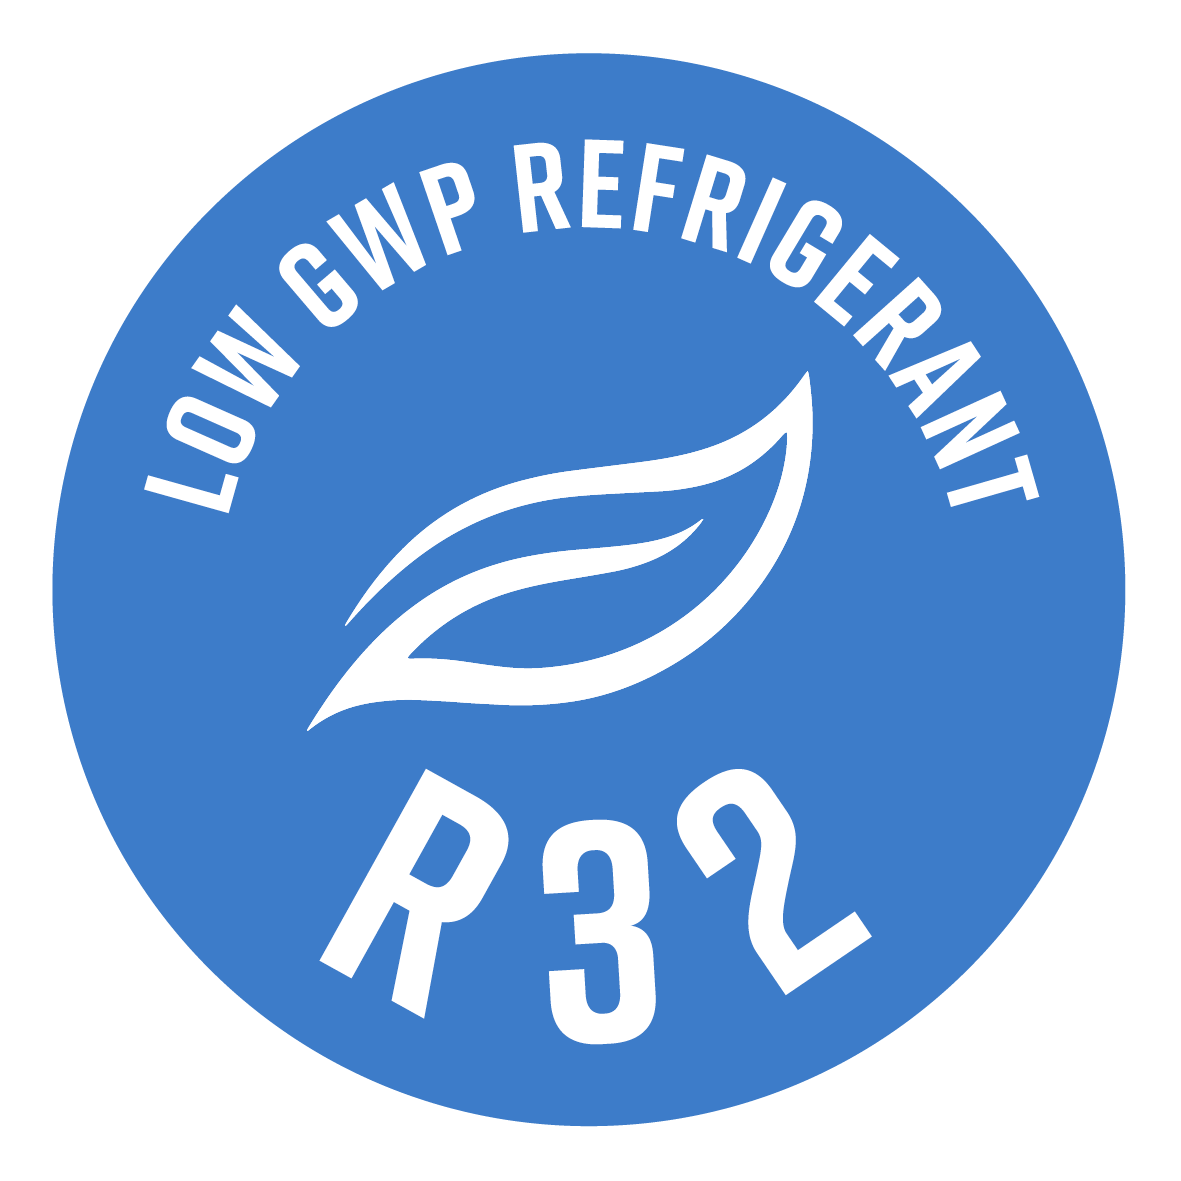 Utilizza il refrigerante R32, caratterizzato da un effetto serra ridotto di quasi il 70% (rispetto all'R410A).